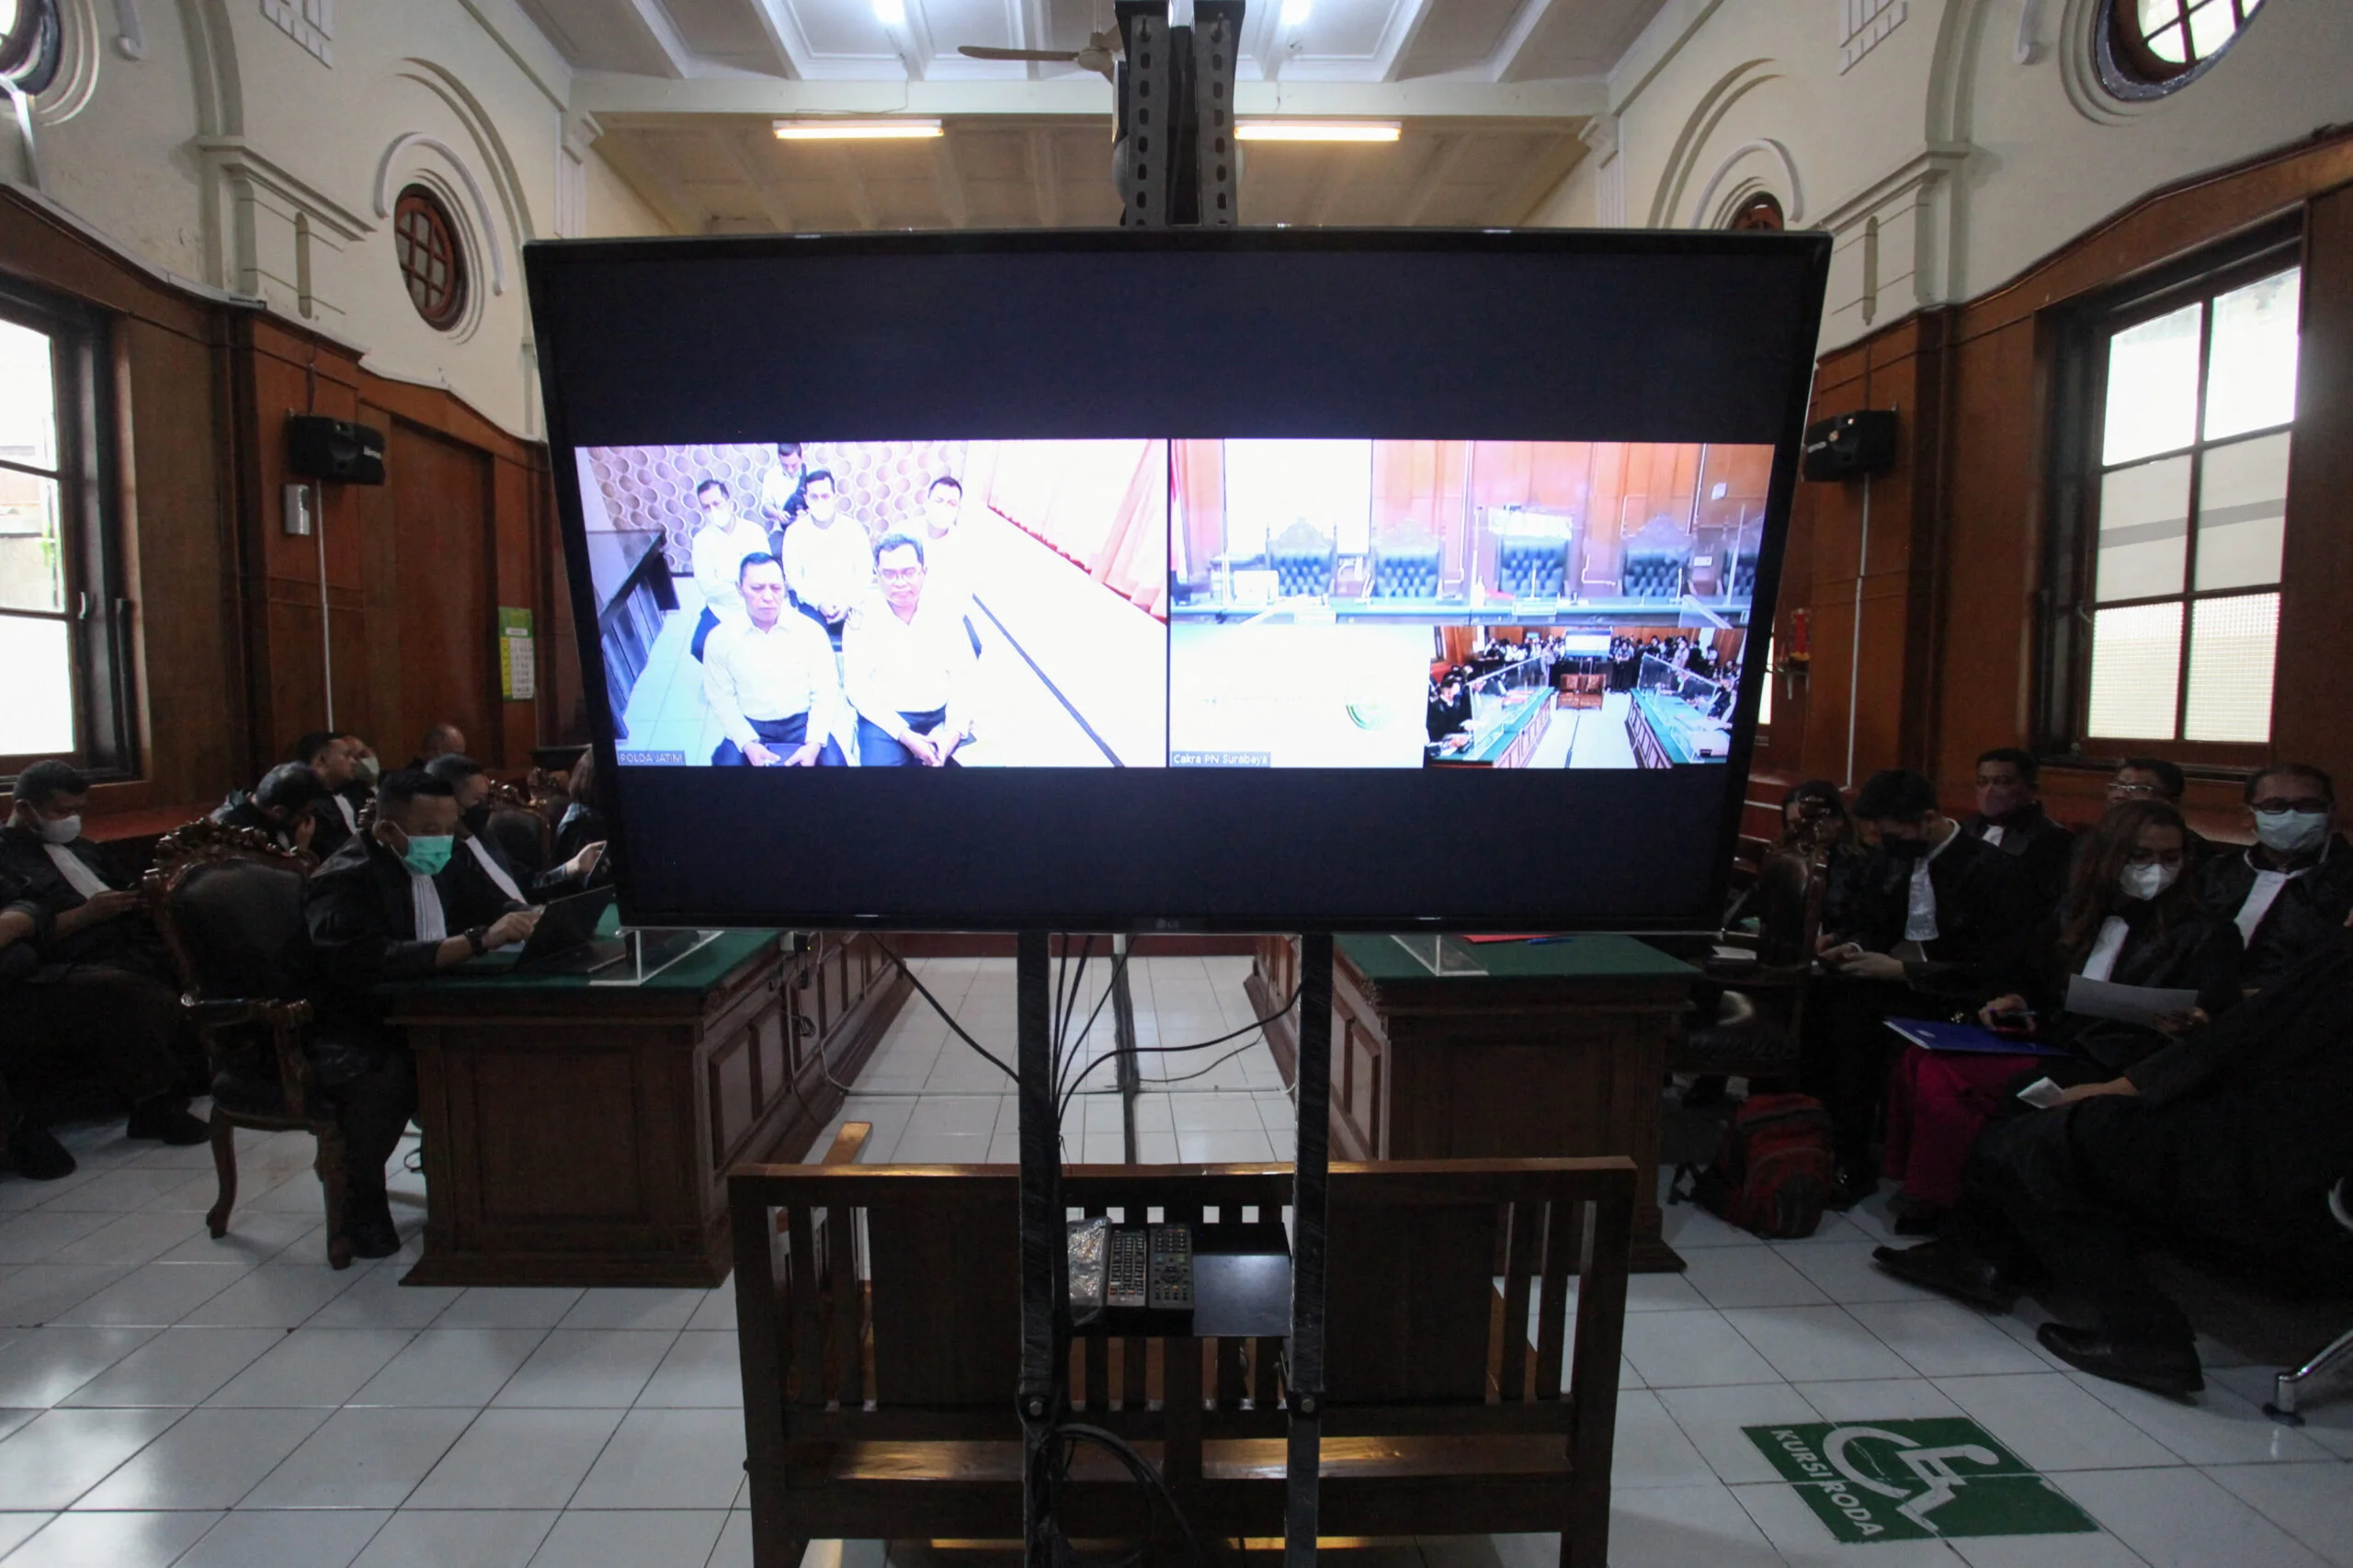 מסך המראה את הנאשמים במהלך משפט על רמיסה המונית במהלך משחק כדורגל במזרח ג'אווה, 2022. צילום: רויטרס